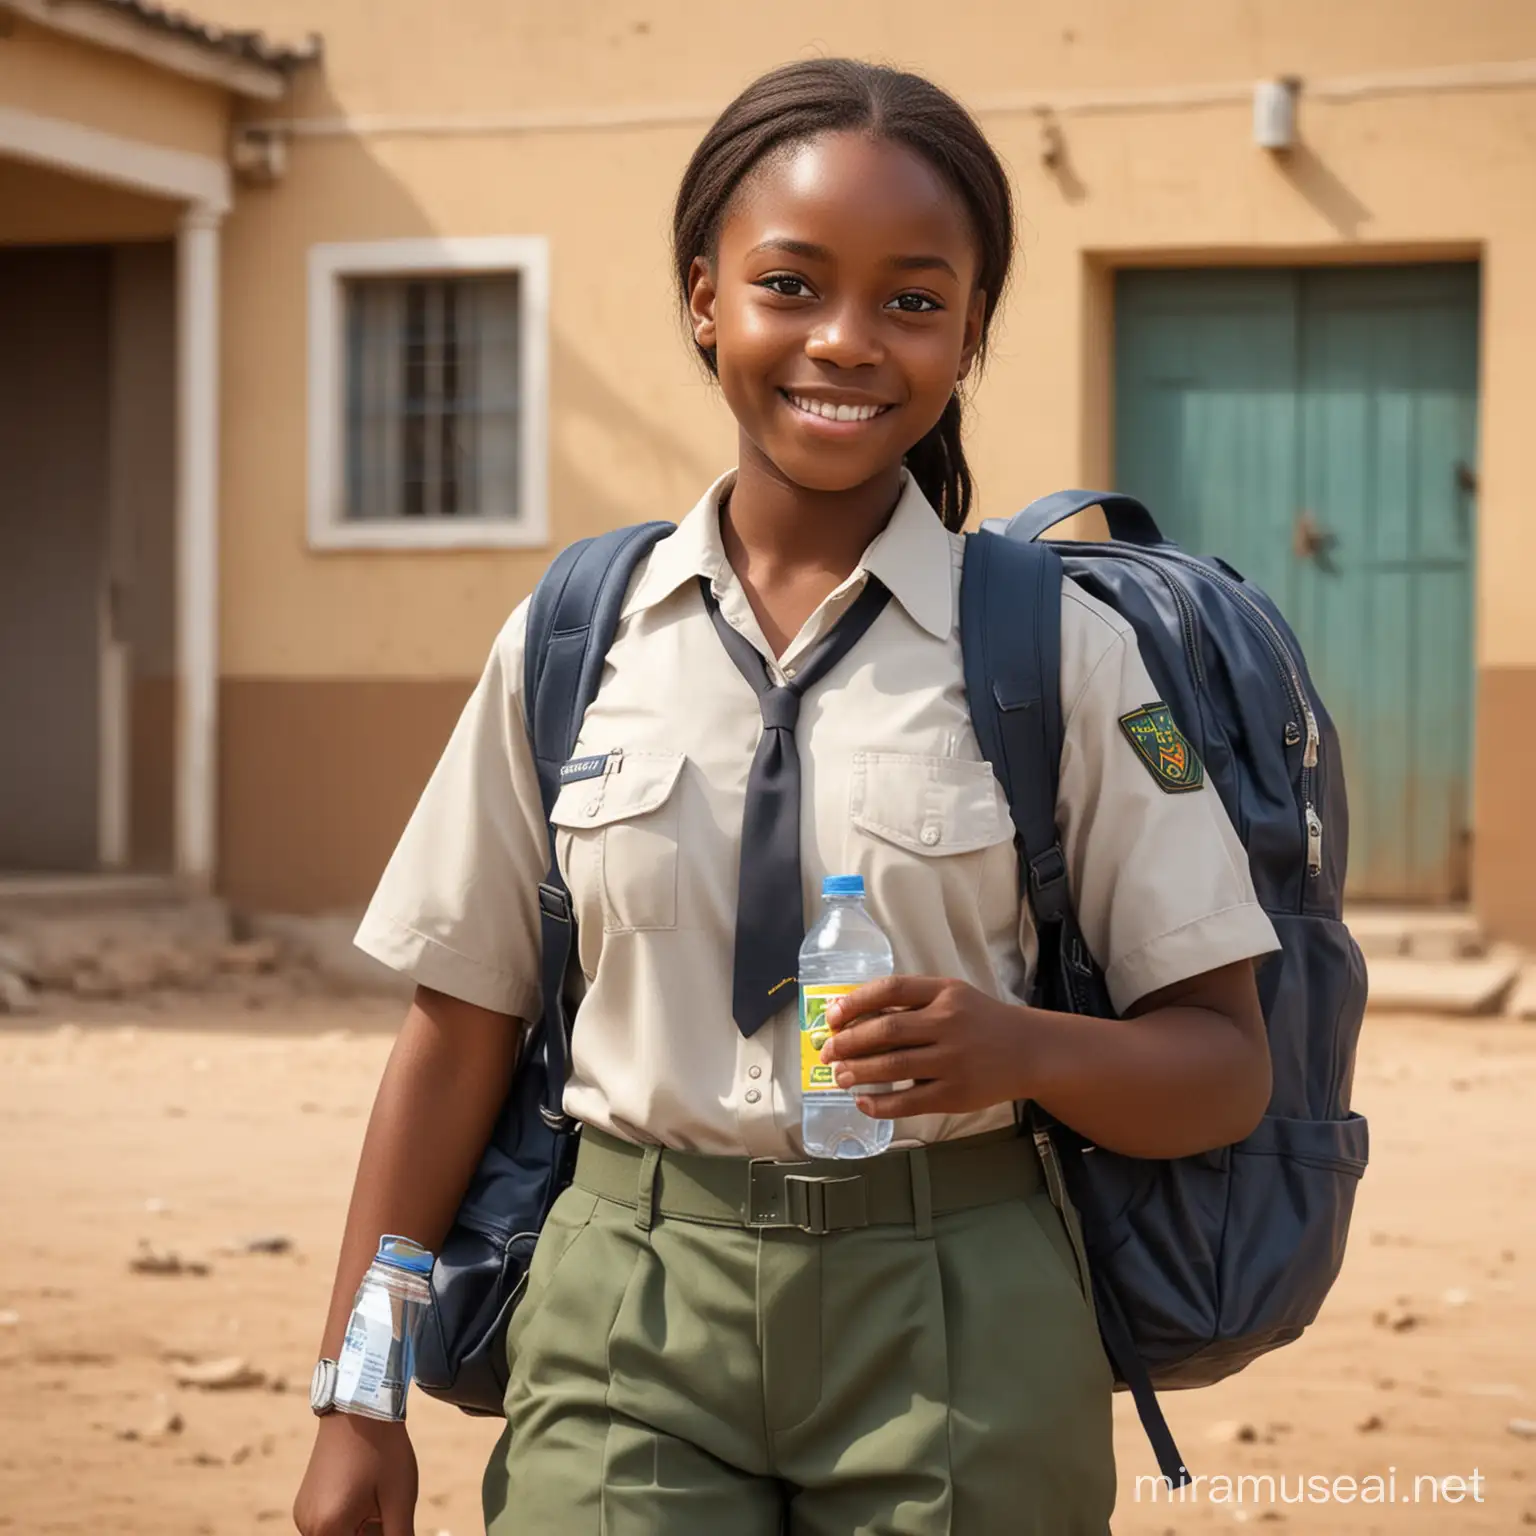 image realiste montrant une petite fille africaine allant bien habillé en uniforme, allant à l'école avec sa gourde d'eau et son sac au dos sur lequel il est ecrit "HML TRADE". le personnage doit donner l'impression d'etre heureux